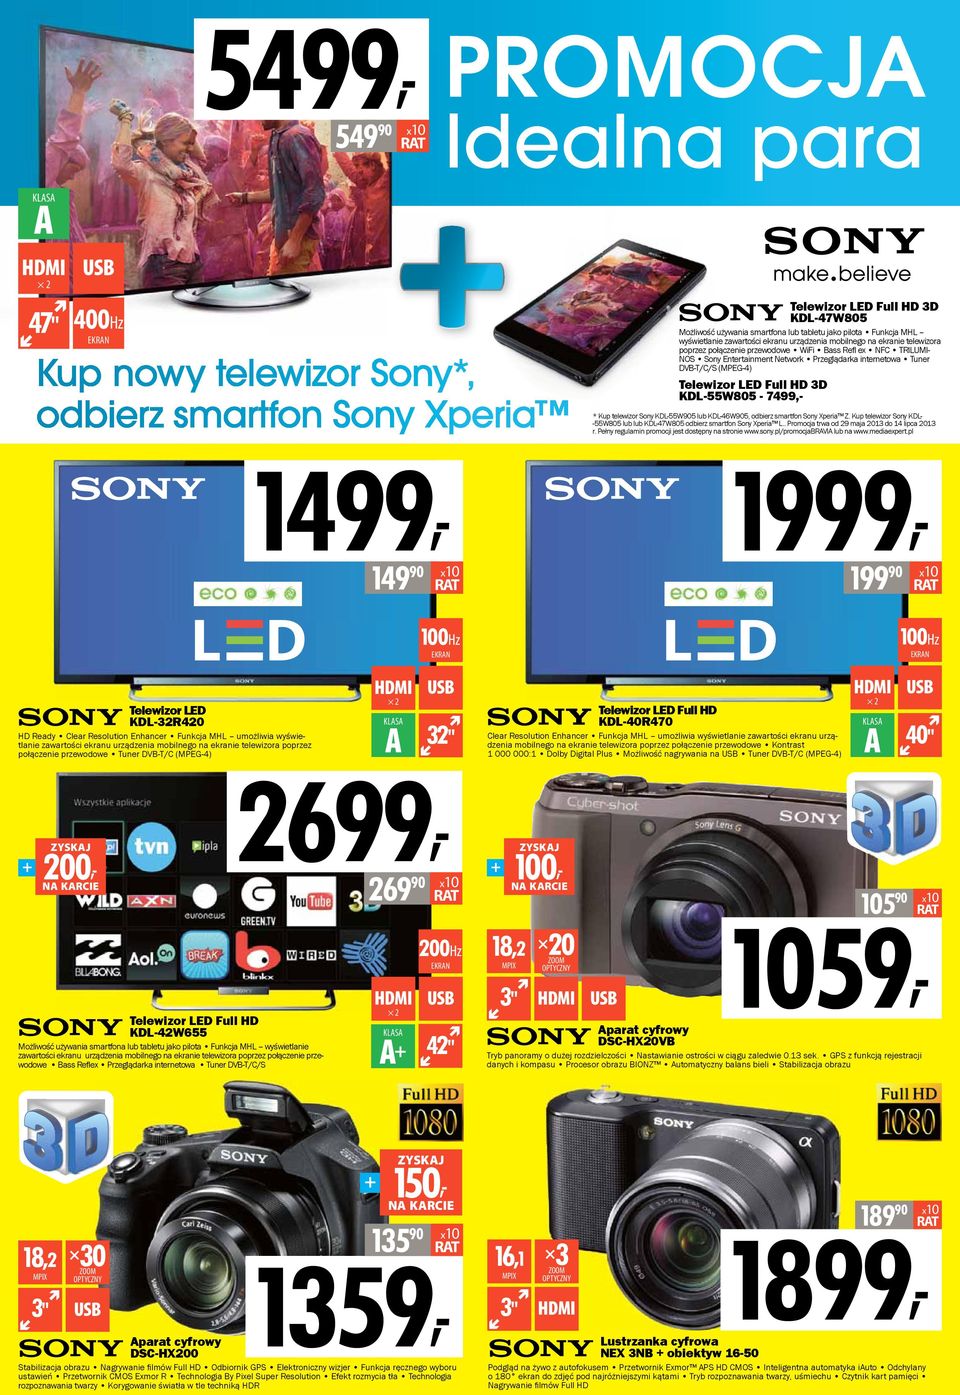 KDL-55W805-7499,- * Kup telewizor Sony KDL-55W905 lub KDL-46W905, odbierz smartfon Sony Xperia Z. Kup telewizor Sony KDL- -55W805 lub lub KDL-47W805 odbierz smartfon Sony Xperia L.